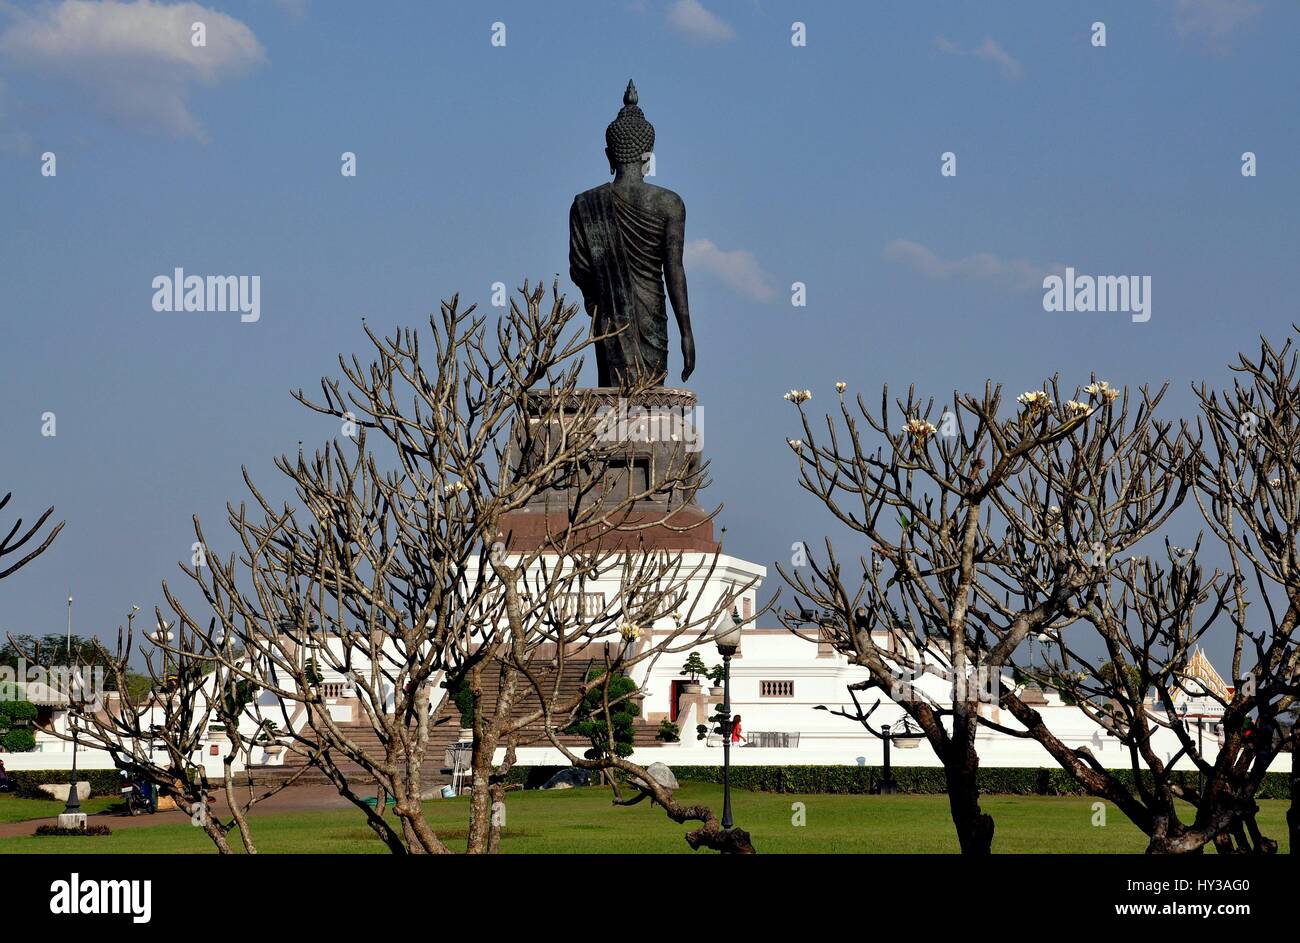 Salaya, Thailand - January 16, 2010:   A colossal walking Buddha statue dominates Phra Phutthamonthon Buddhist park Stock Photo